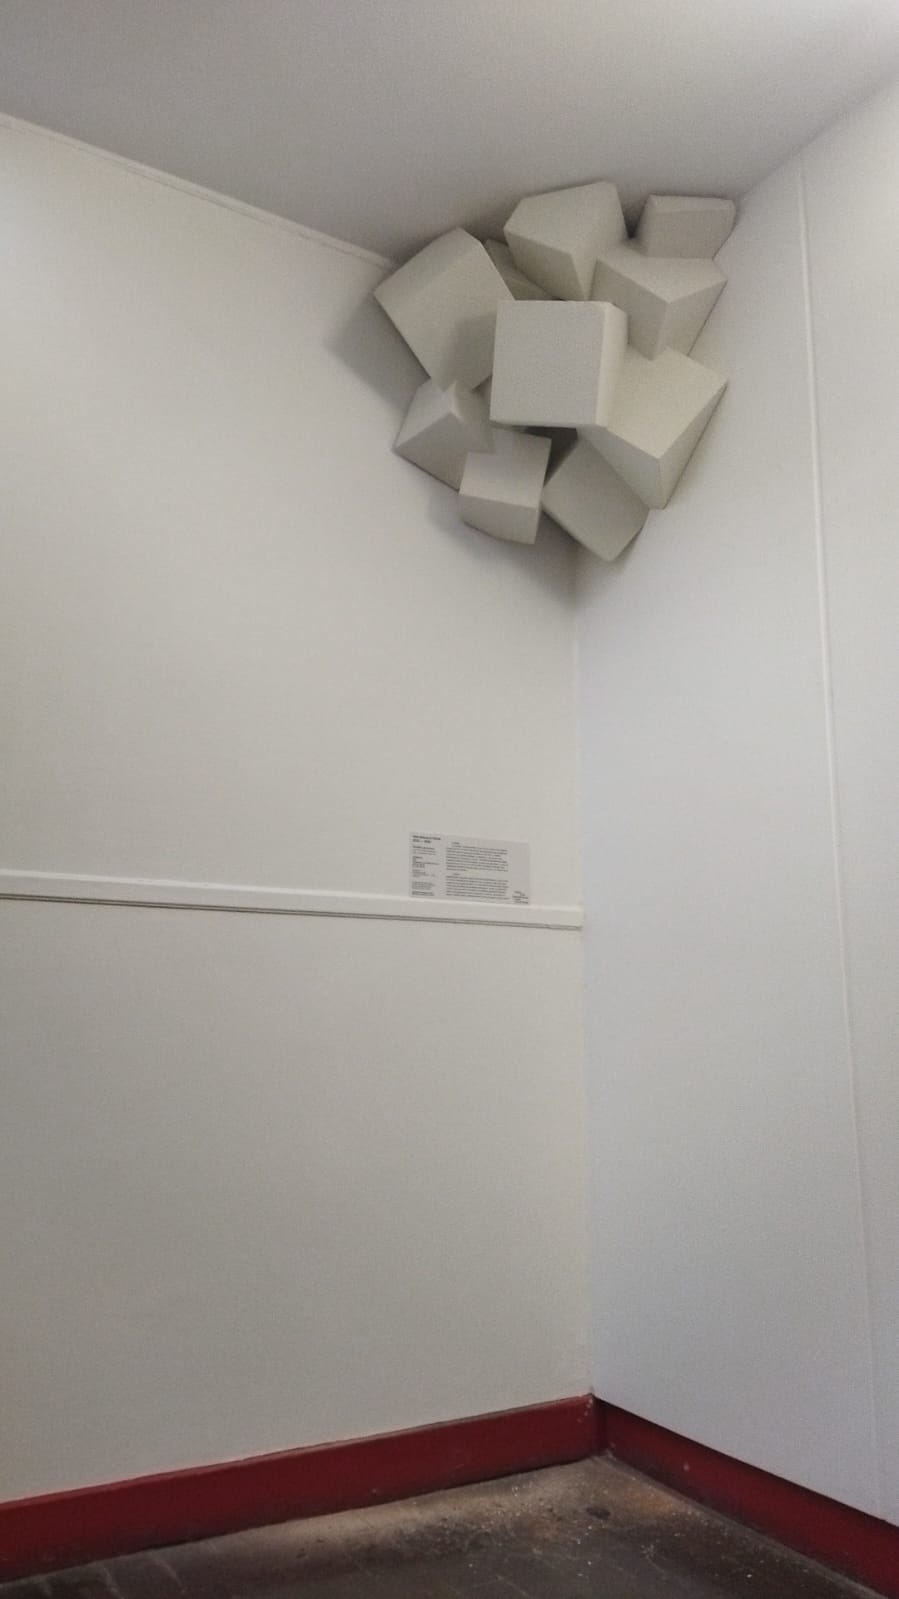 Installation de la sculpture "Cube #4" de Vincent Lamouroux dans l'école élémentaire Cavé (18e)